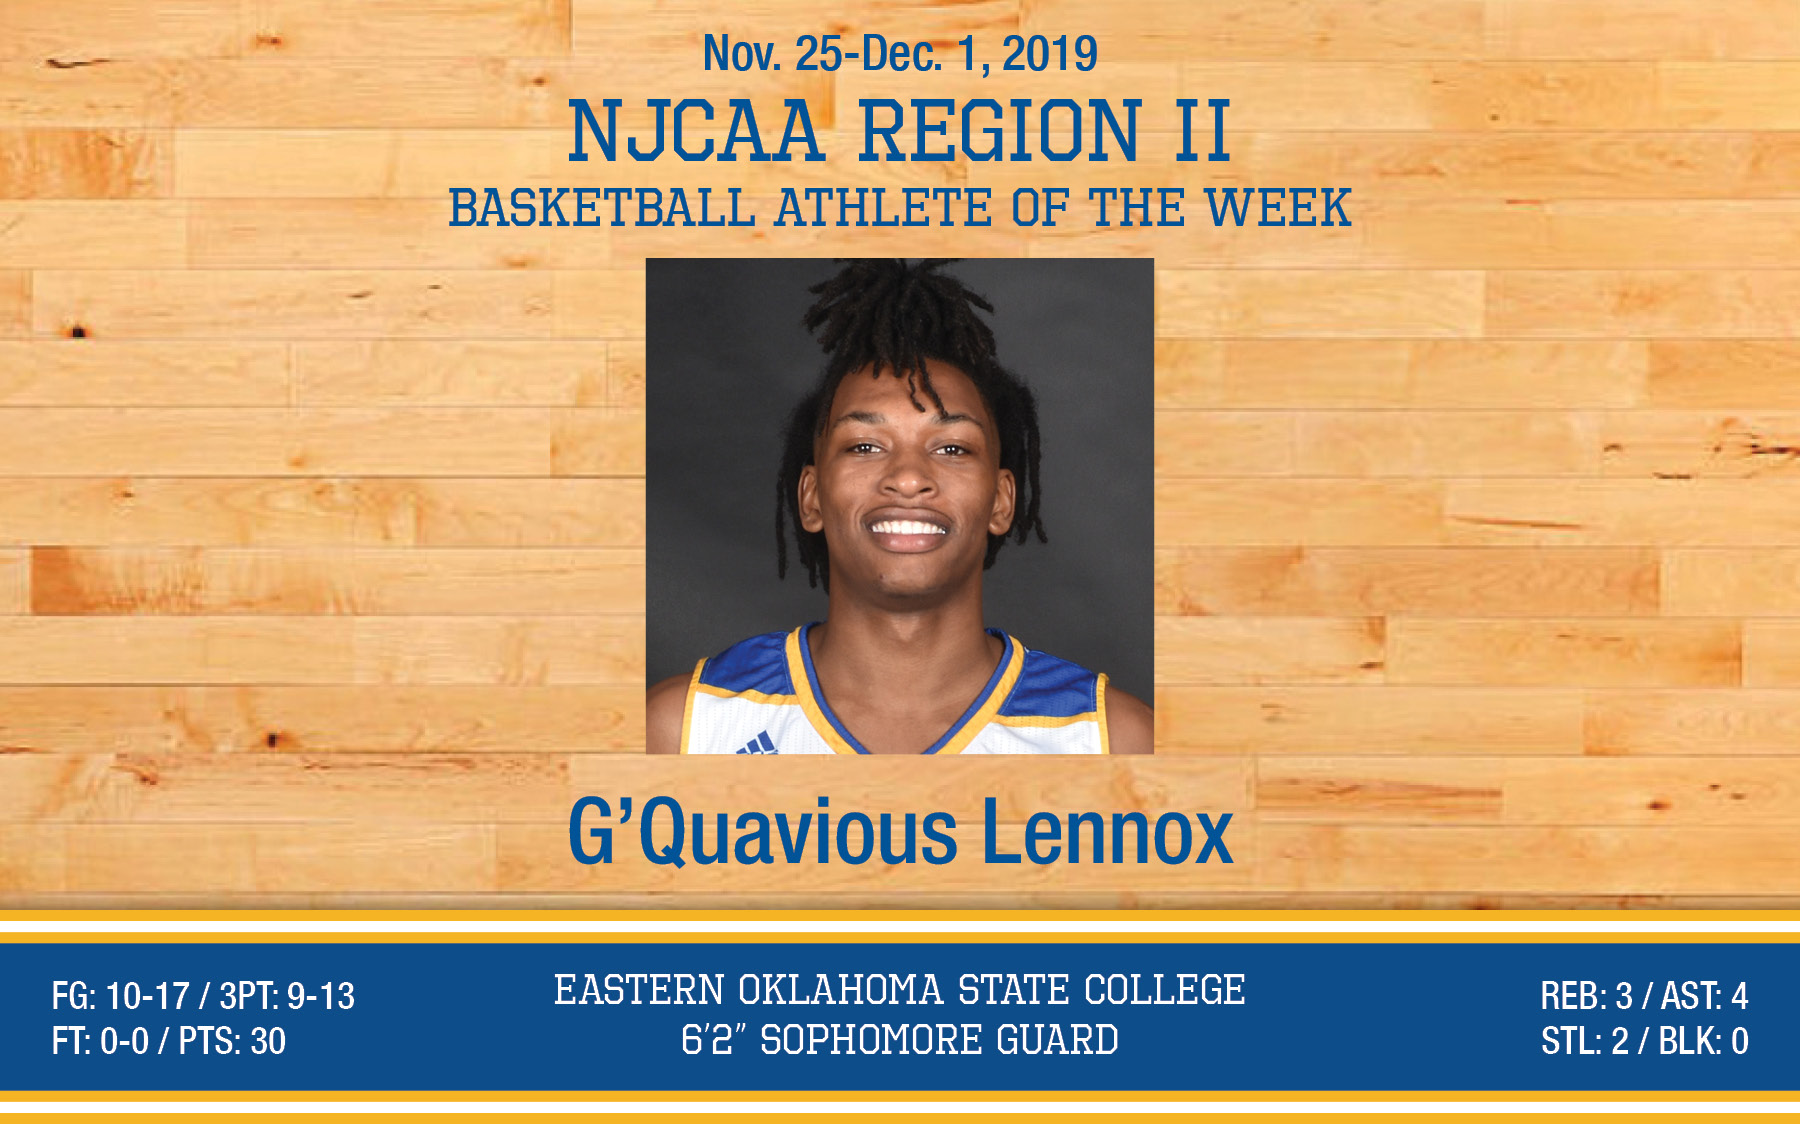 G'Quavious Lennox earns NJCAA Region II Player of the Week honors